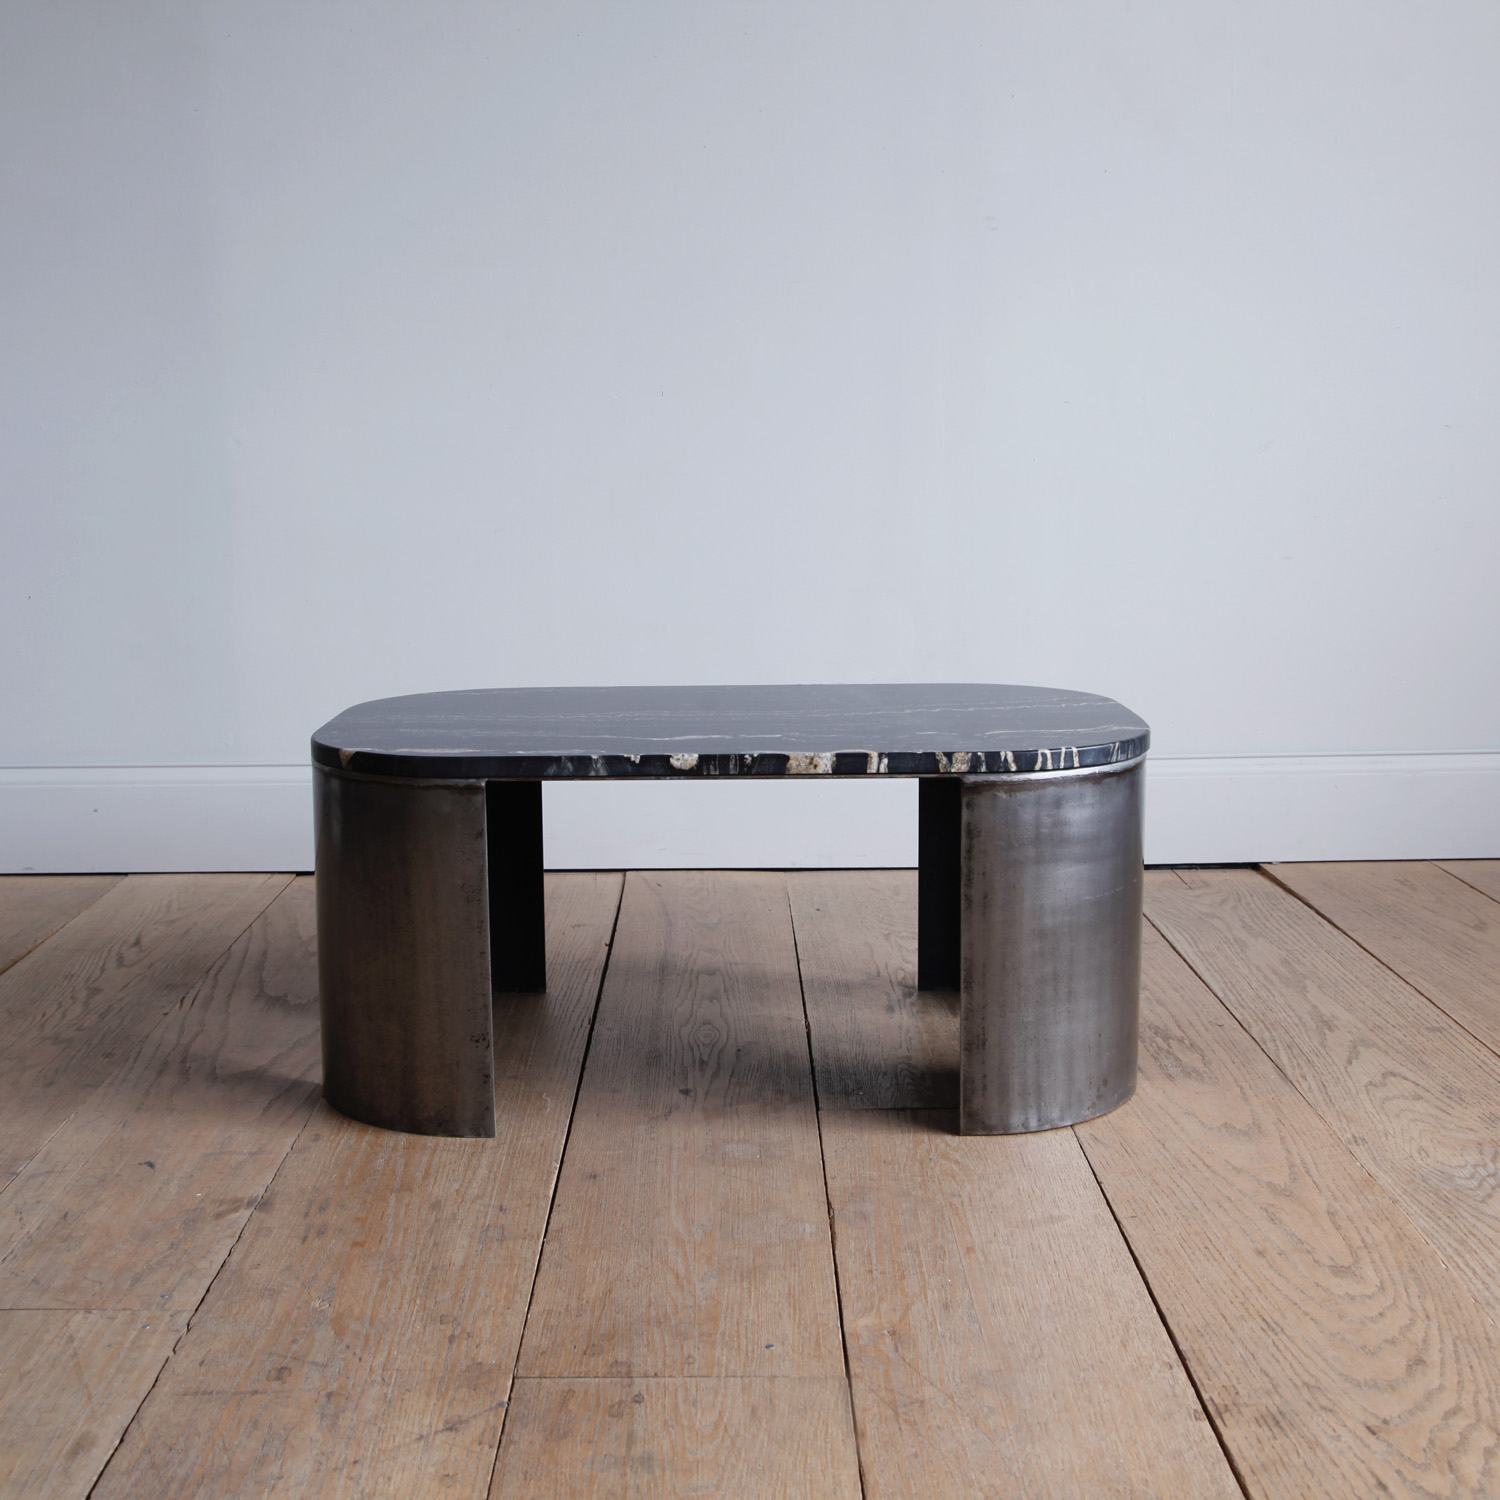 Minimalist Steel and Stone Coffee Table